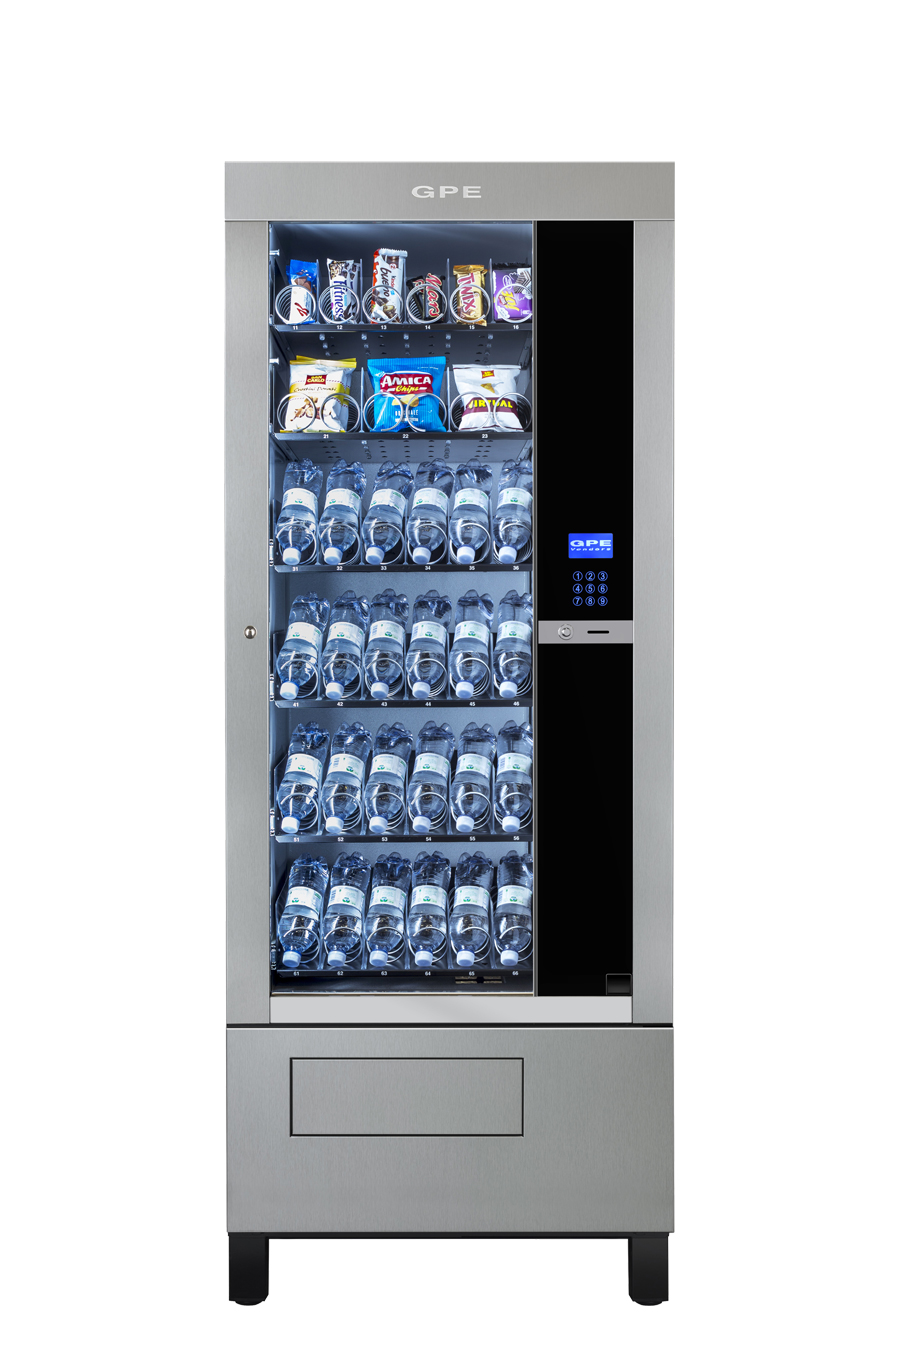 Gpe 30 H170 rivisitato in tutto con altezza diversa refrigeratore per la vendita di snack e bibite